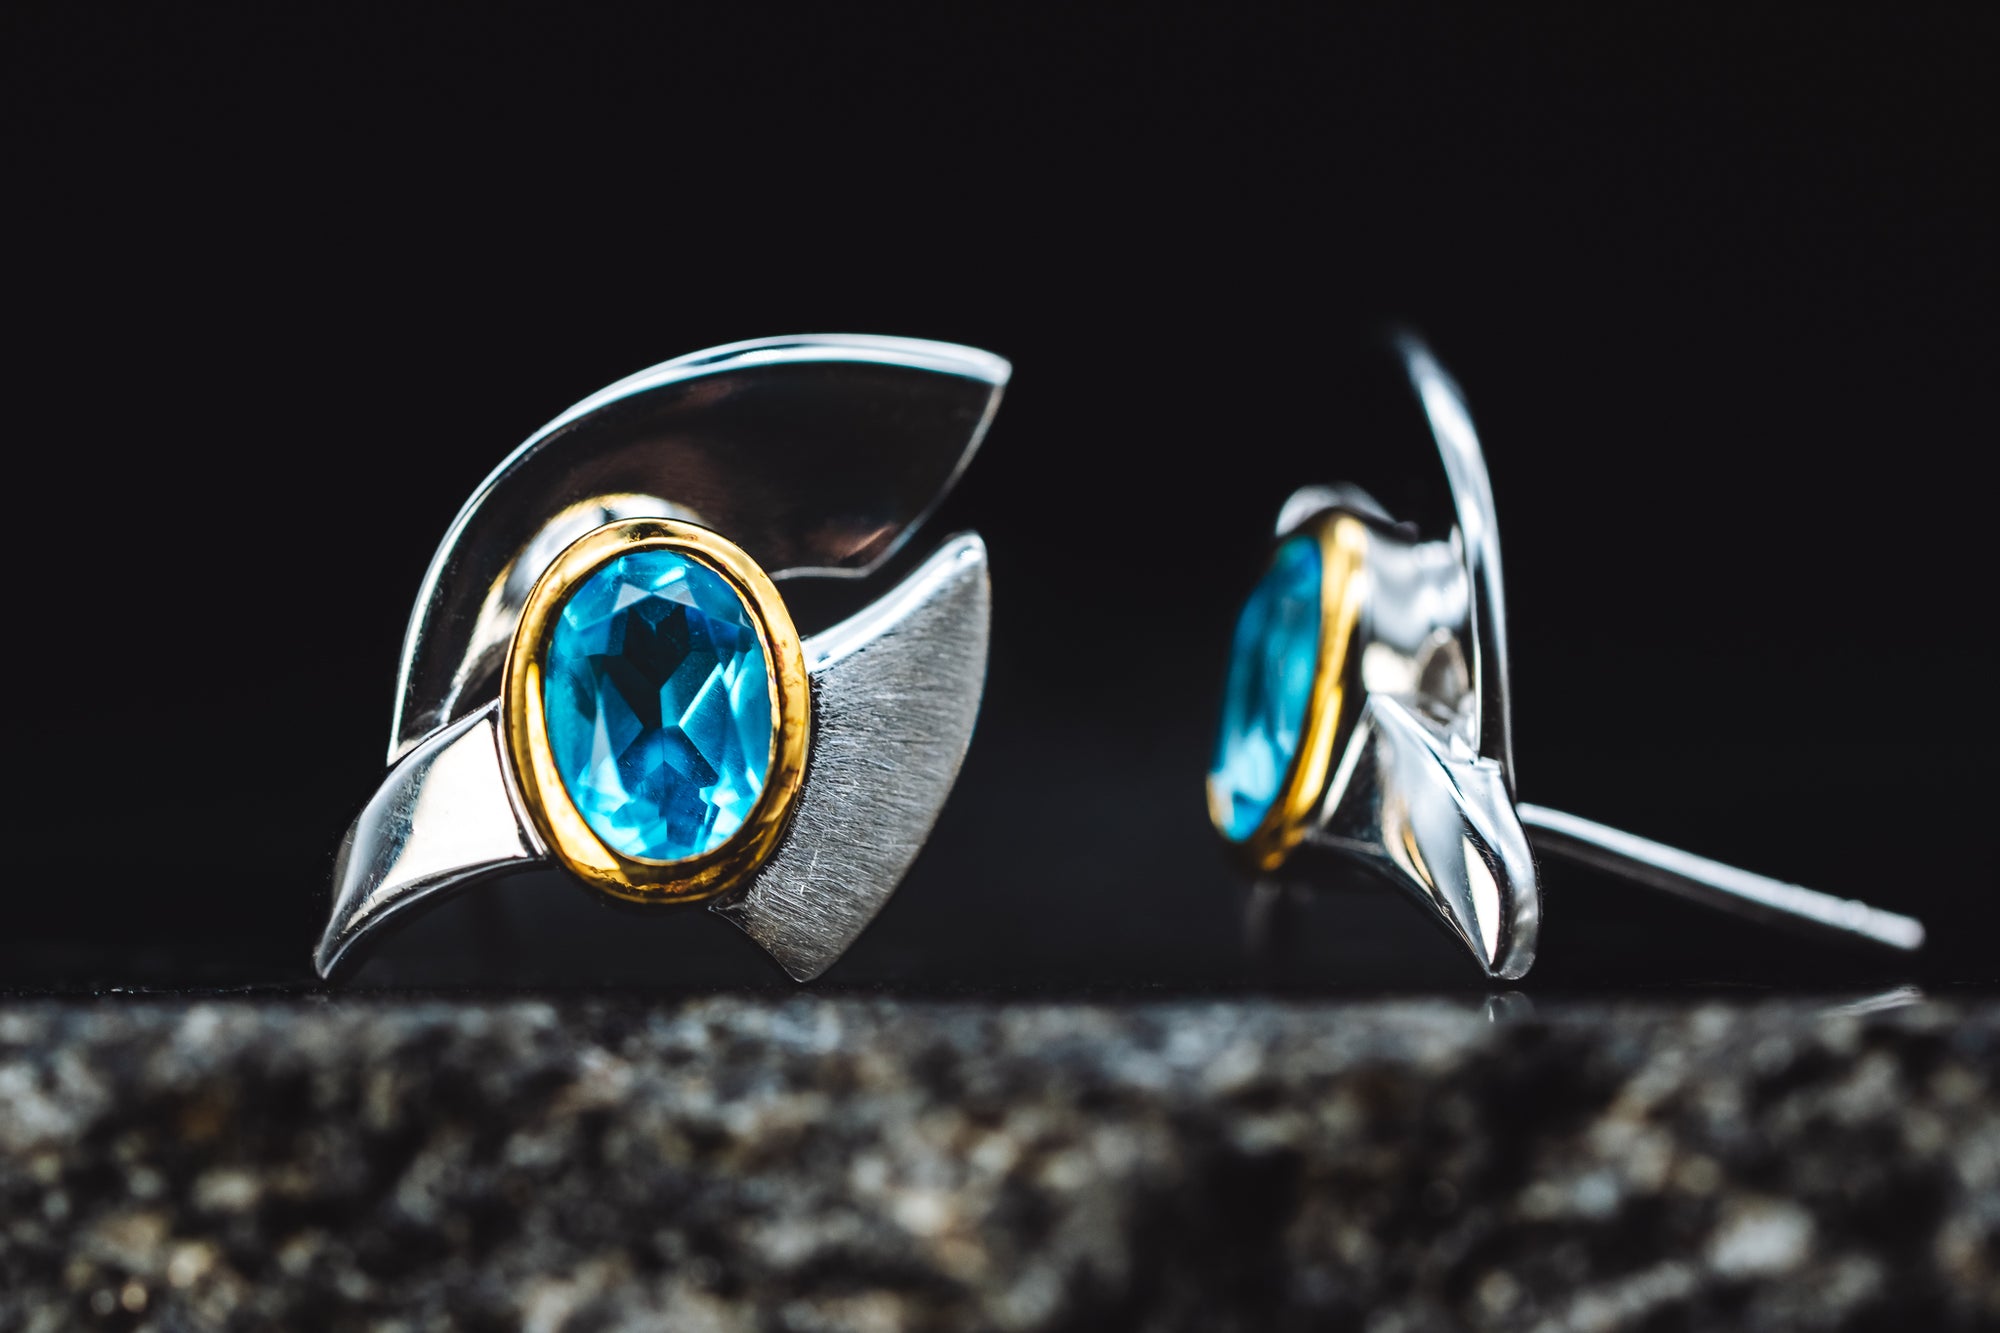 Sterling Silver Blue Topaz Earrings